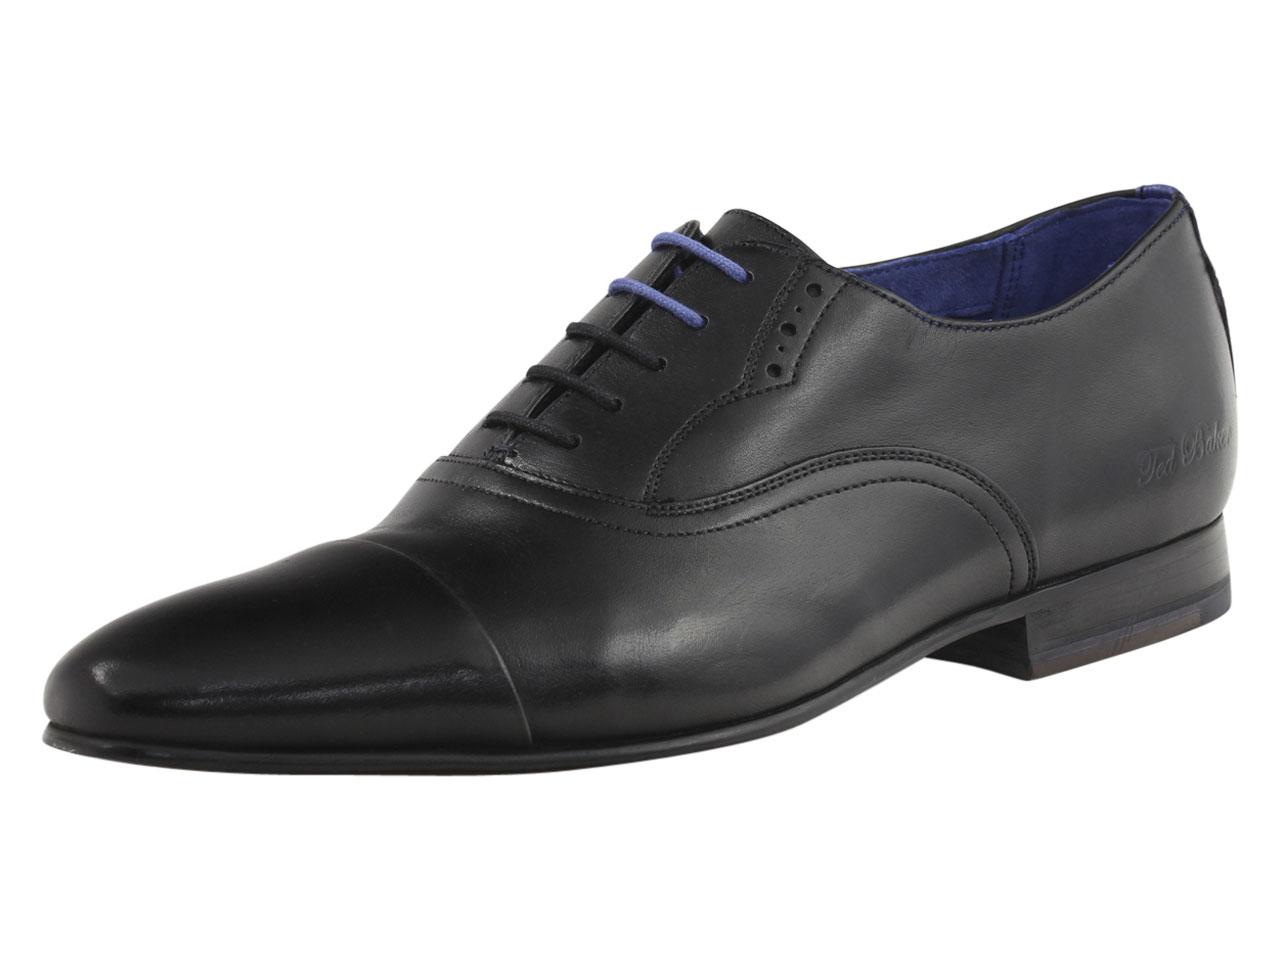 Ted Baker Men's Murain Fashion Oxfords Shoes - Black - 12 D(M) US